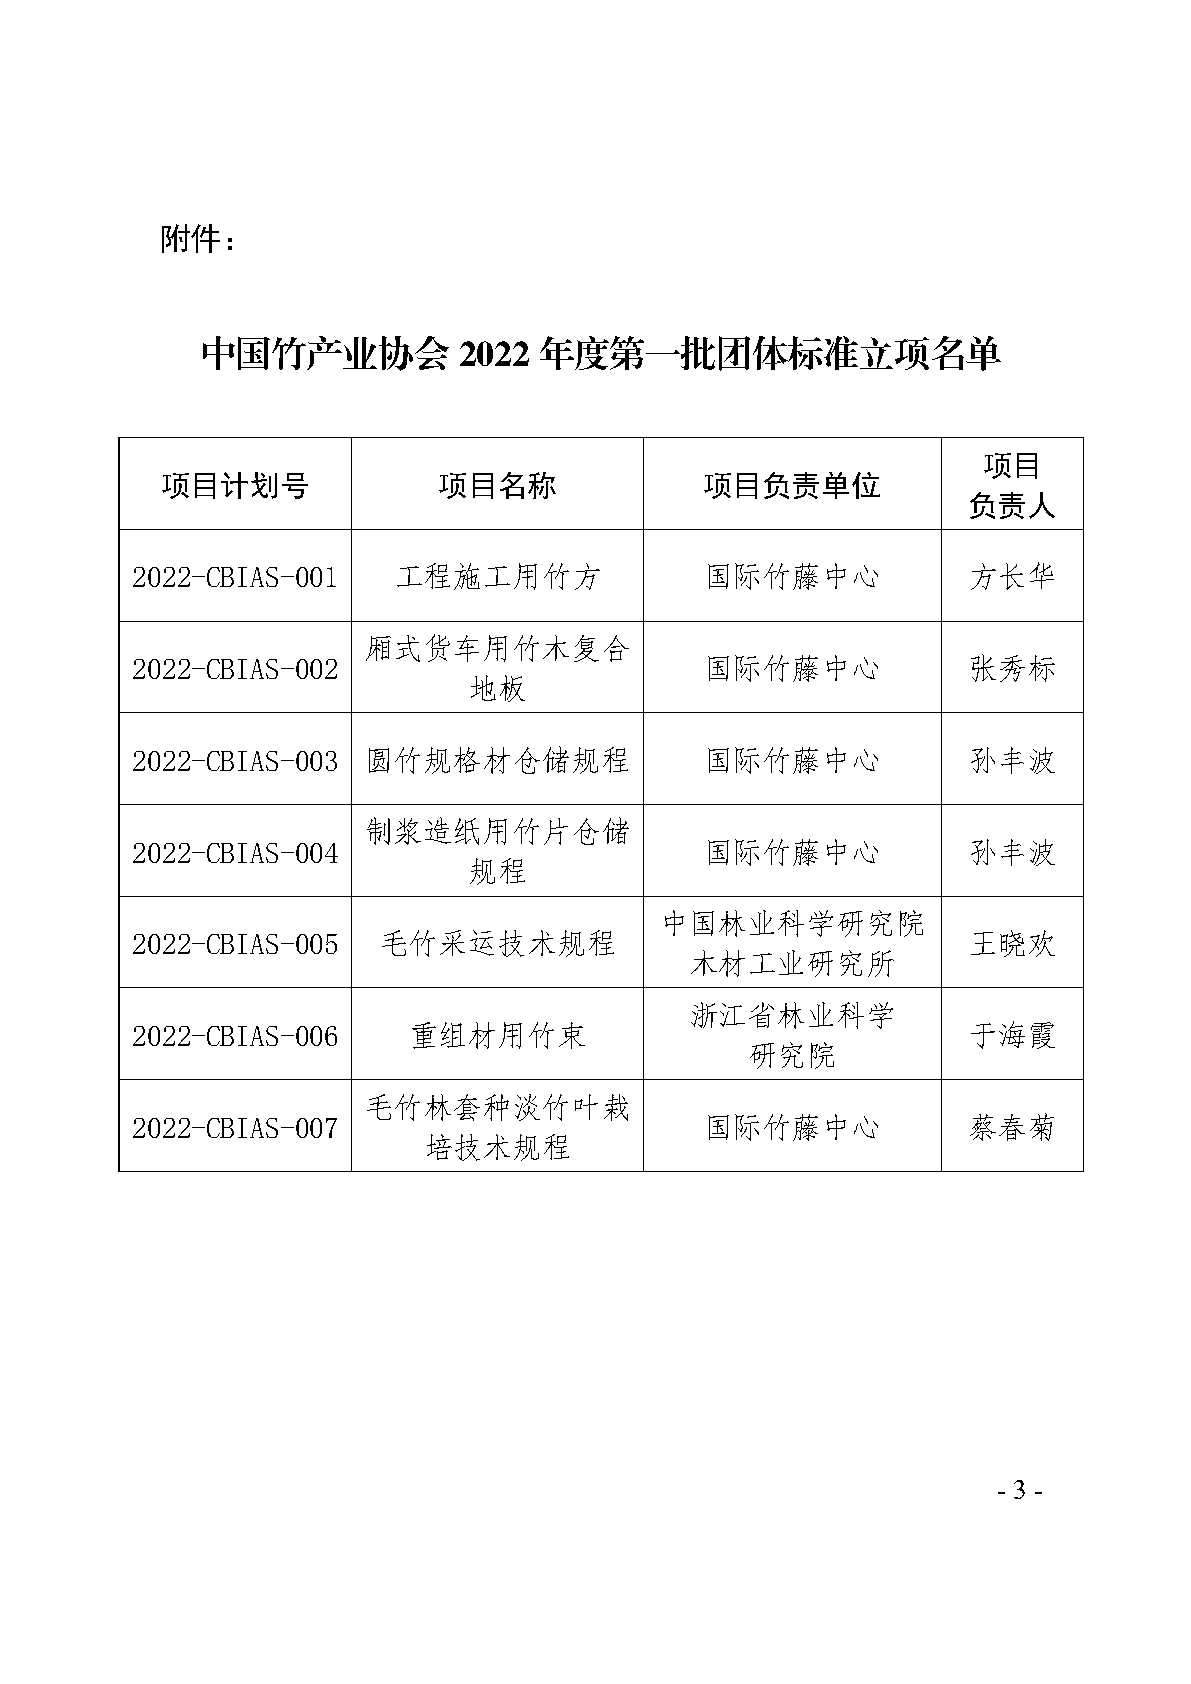 中国竹产业协会关于公布2022年度第一批团体标准立项名单的通知_Page3.png